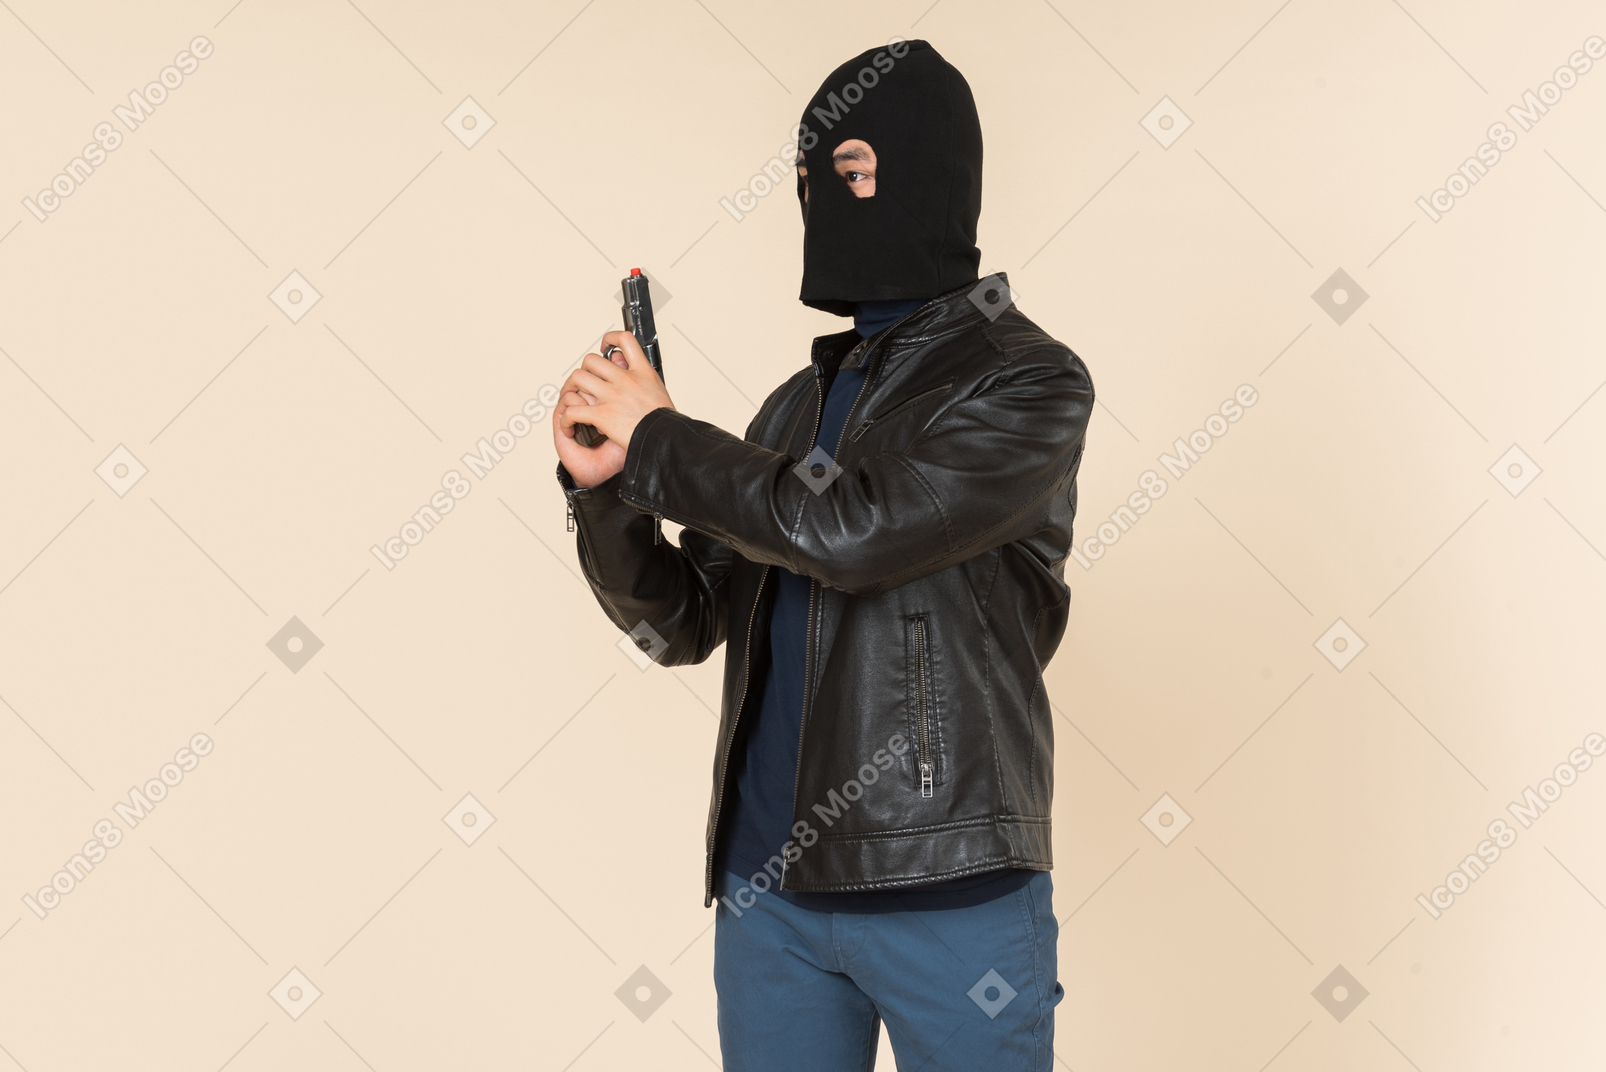 Man in balaclava holding a gun